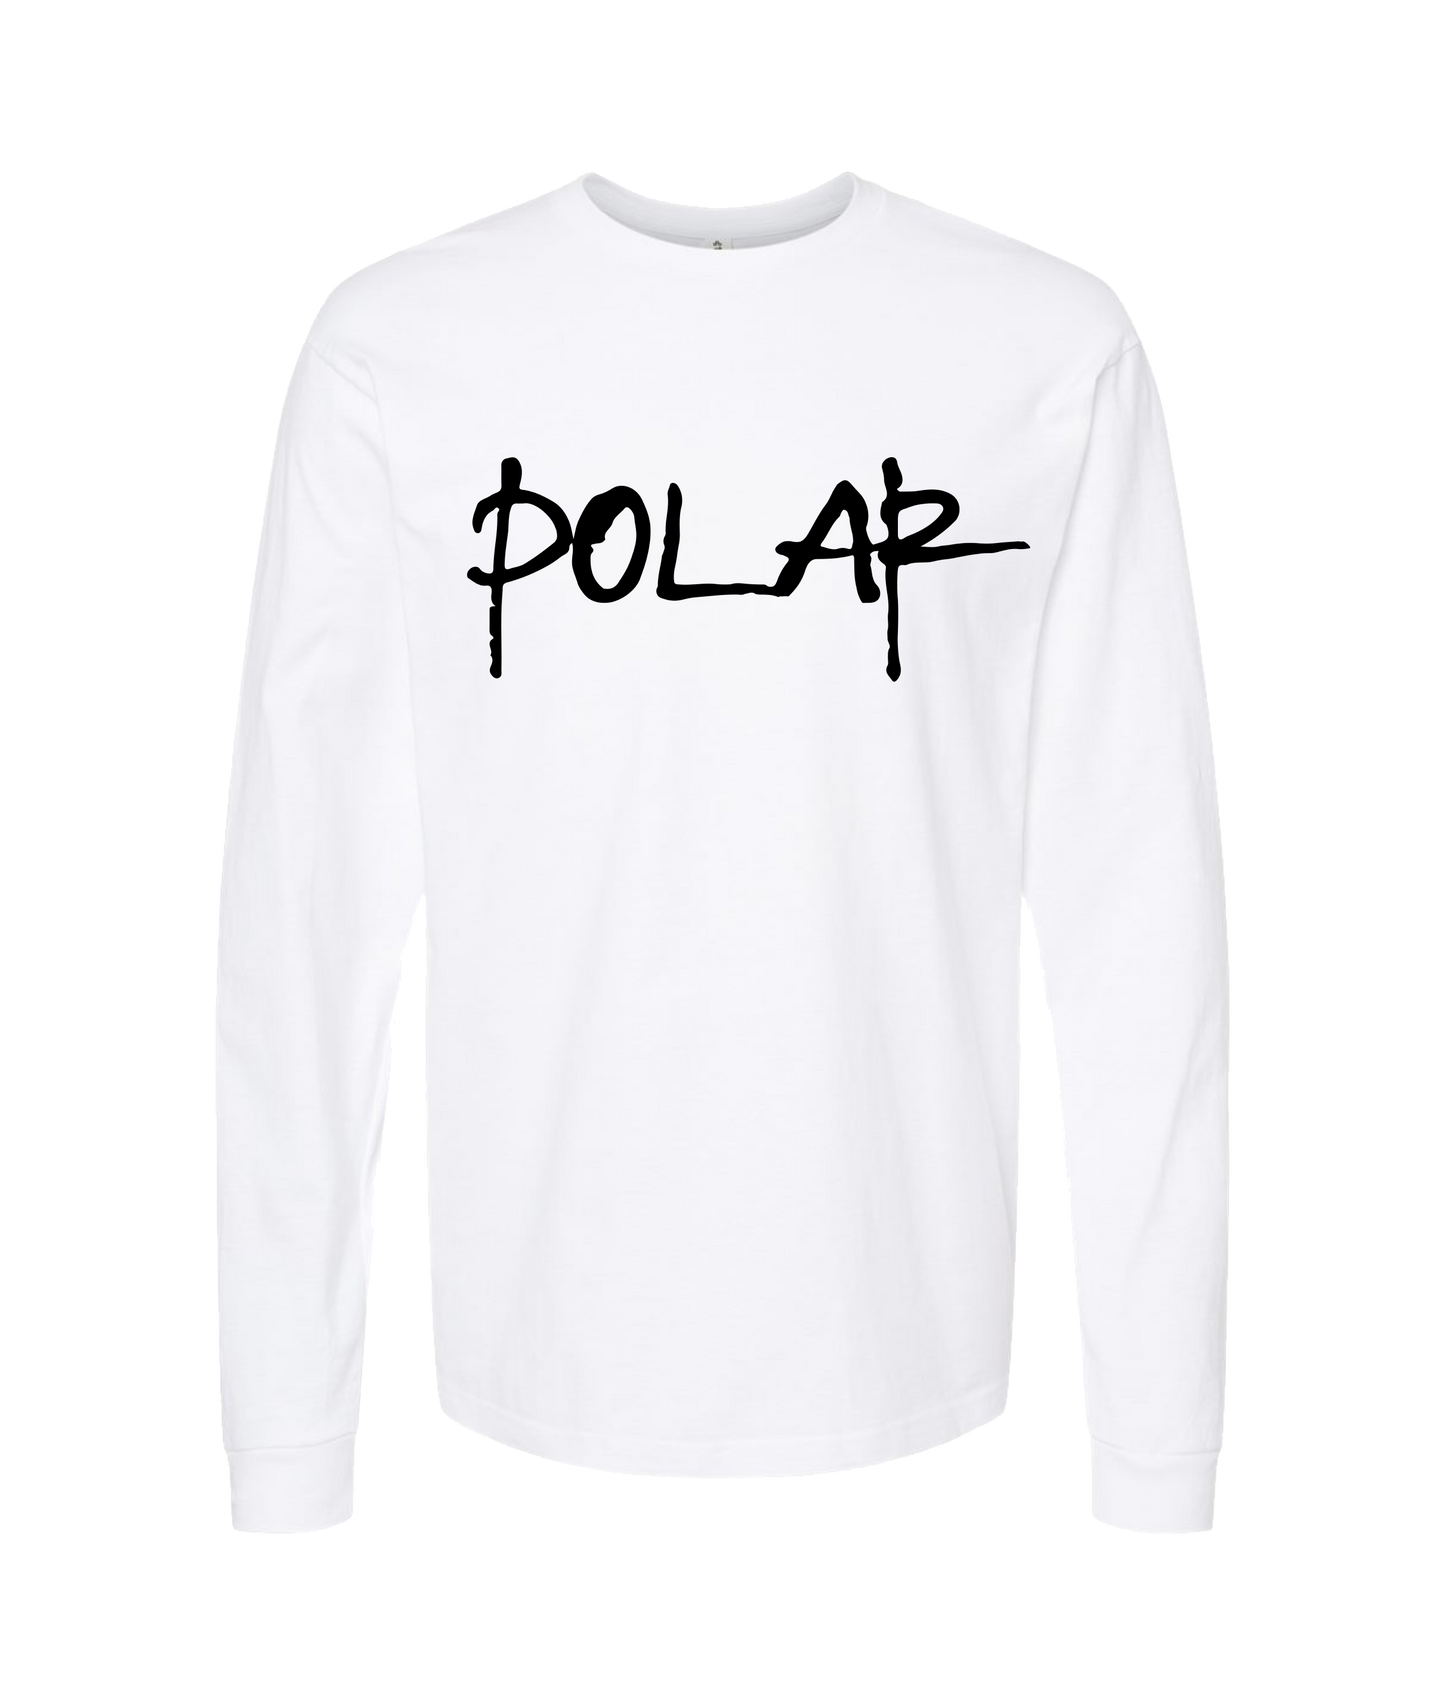 Iampolar - POLAR - White Long Sleeve T